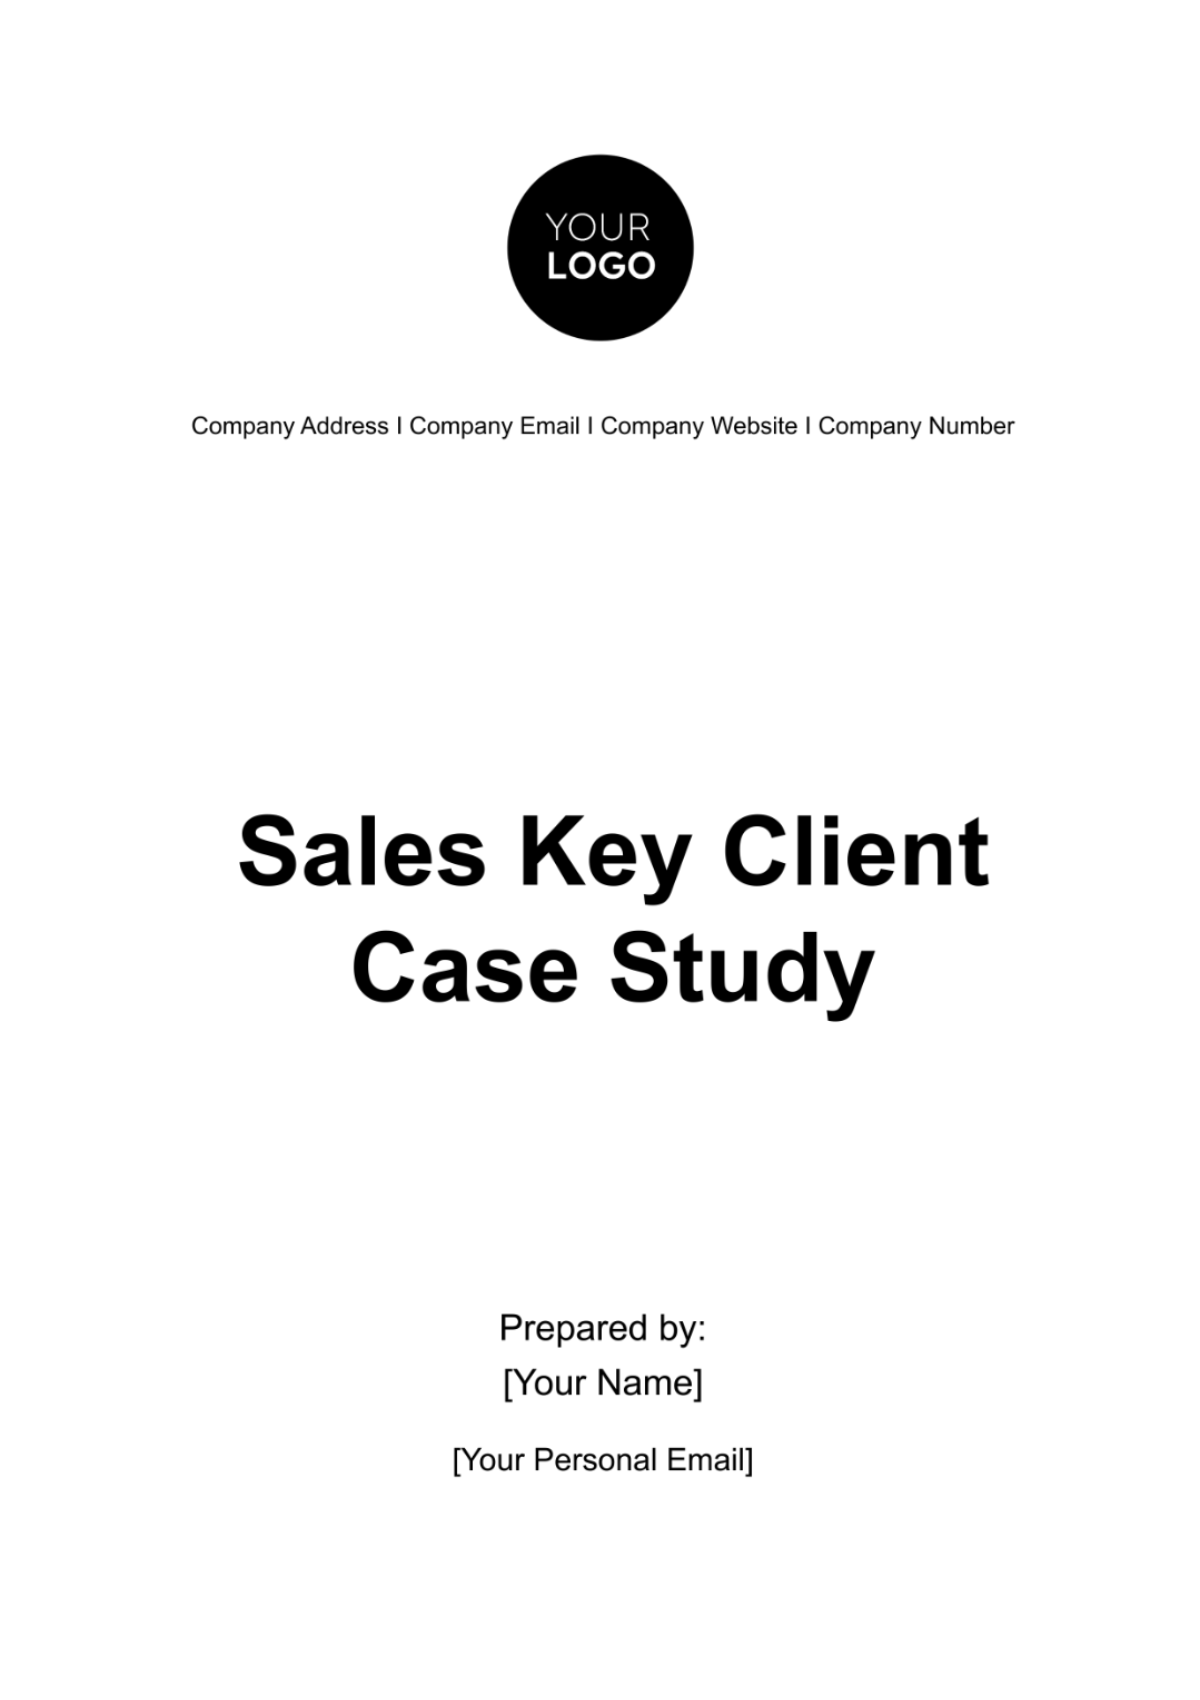 Sales Key Client Case Study Template